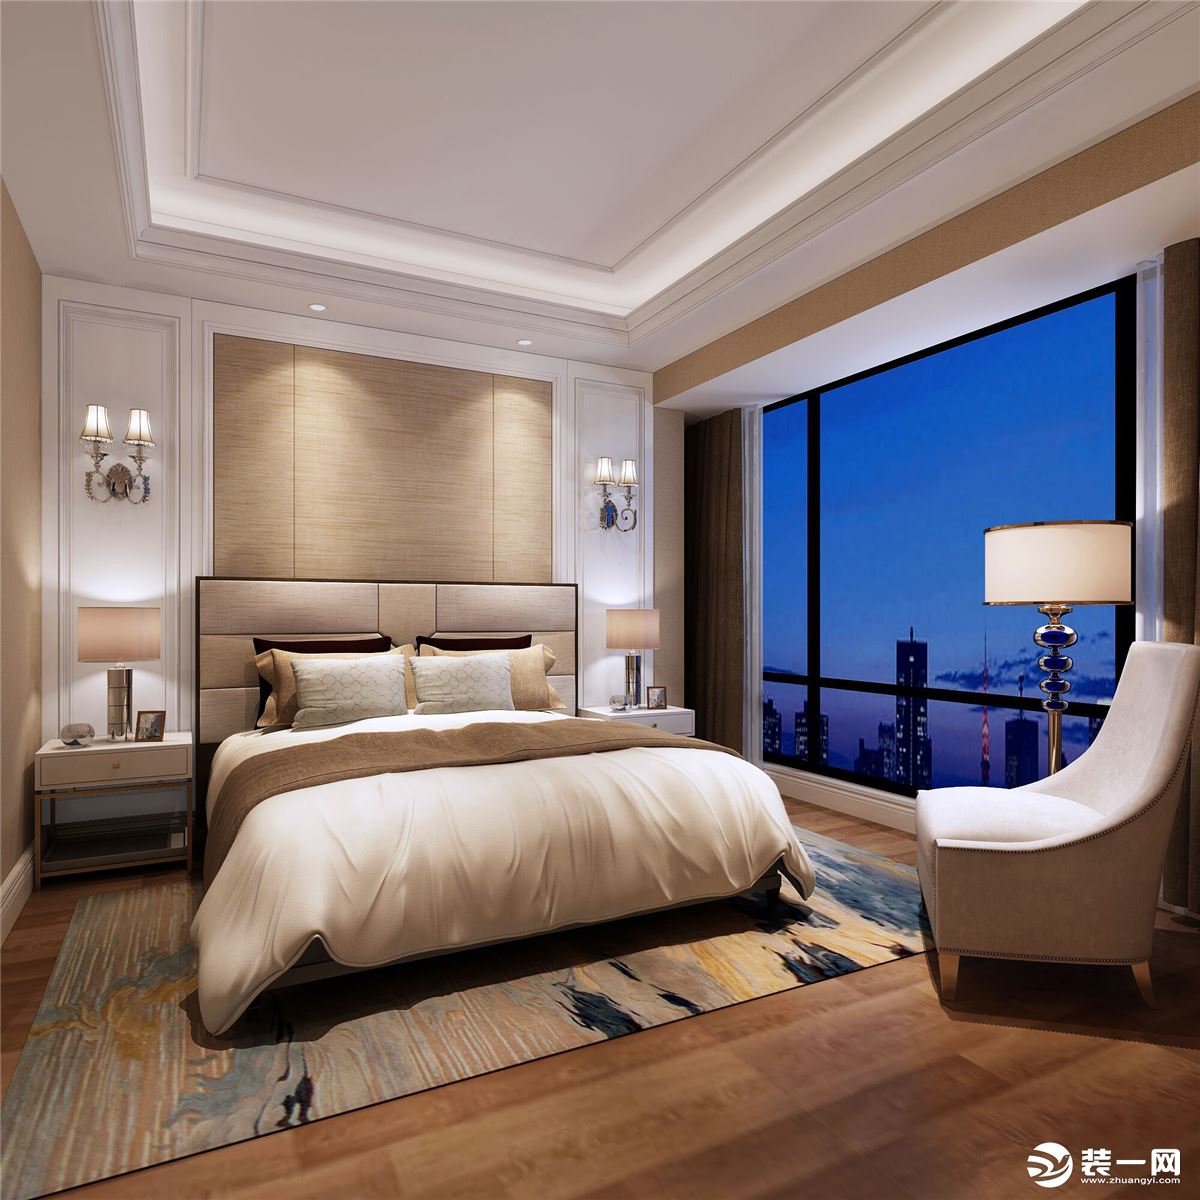  次卧以大床未中轴线，对称的设计，配上米黄色的软装搭配，让卧室空间更完美；